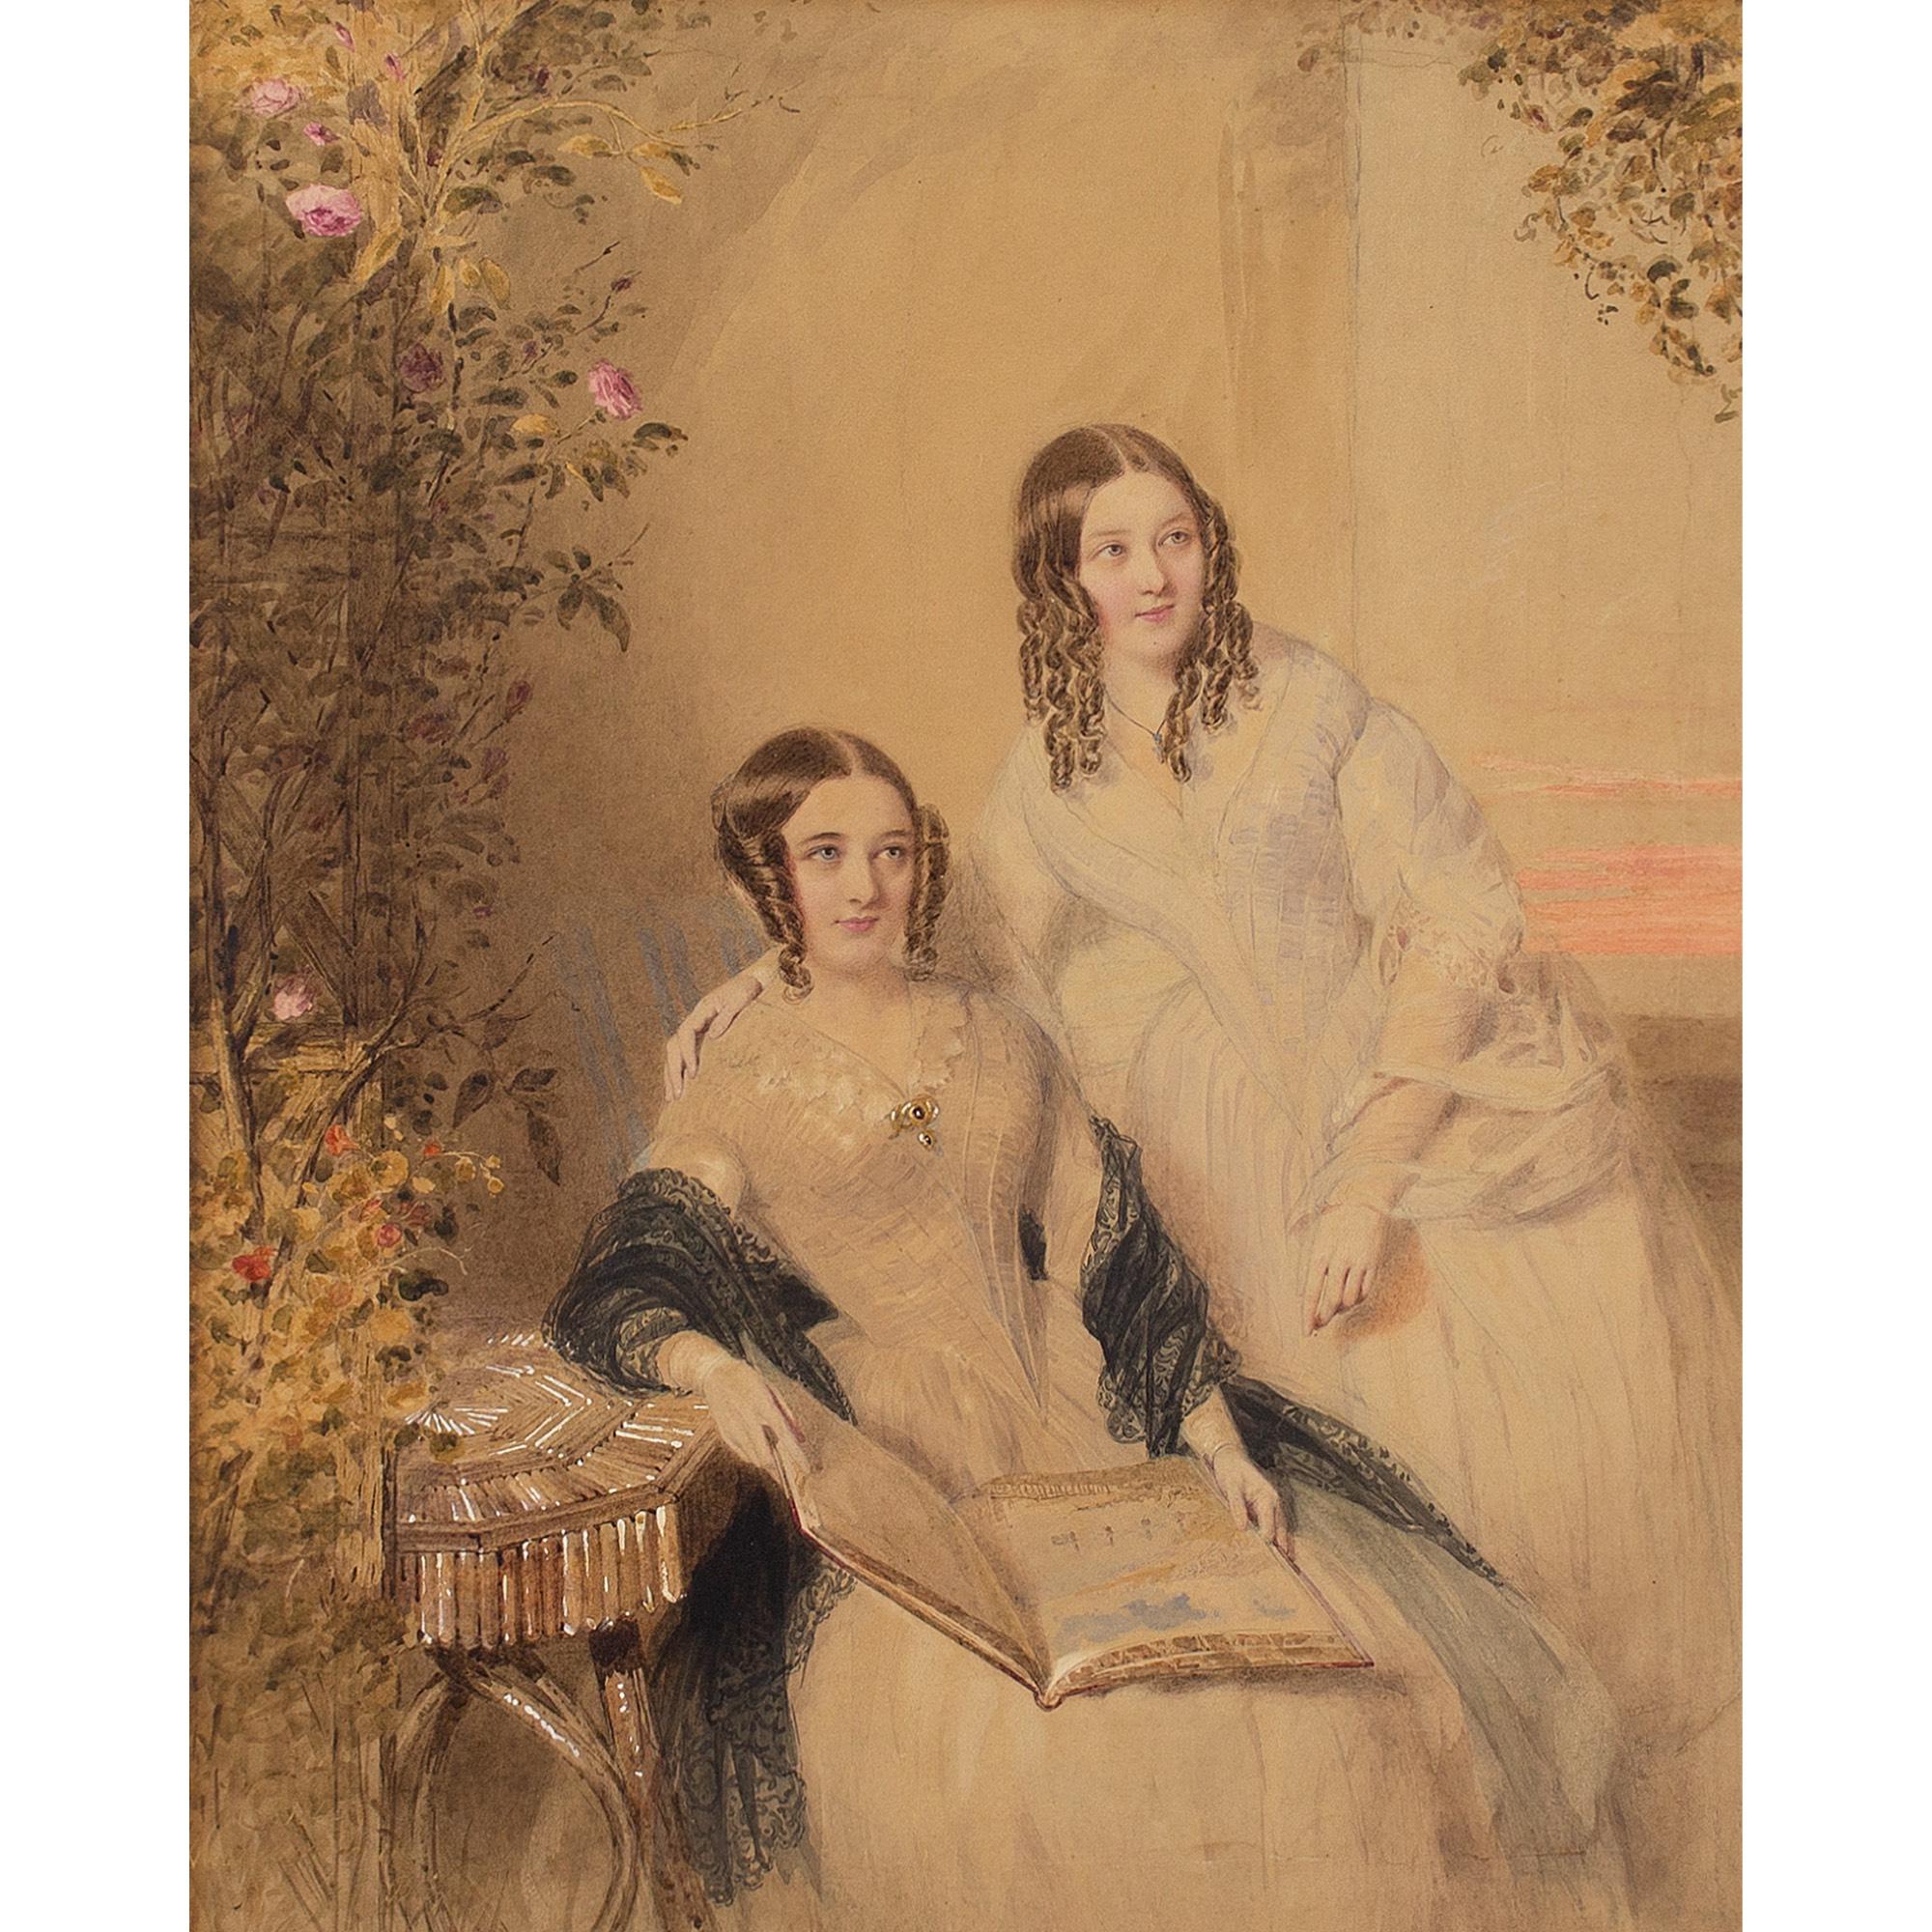 William Drummond, Porträt zweier Schwestern, Aquarell – Art von William Drummond (artist)